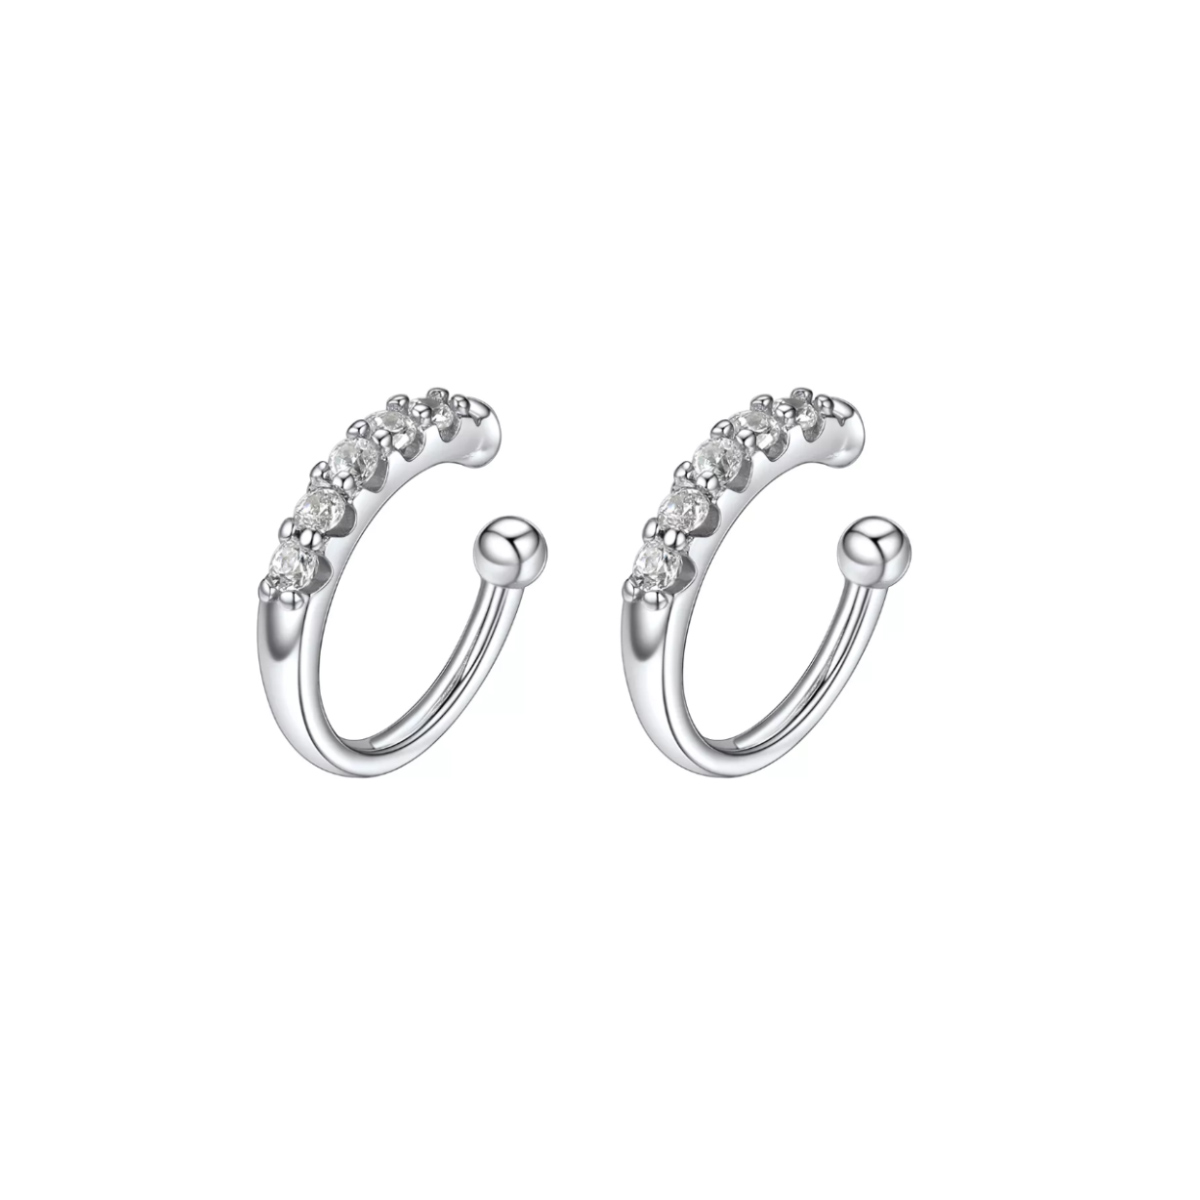 ChicSilver Sterling Silver CZ Ear Cuff Earrings for Women